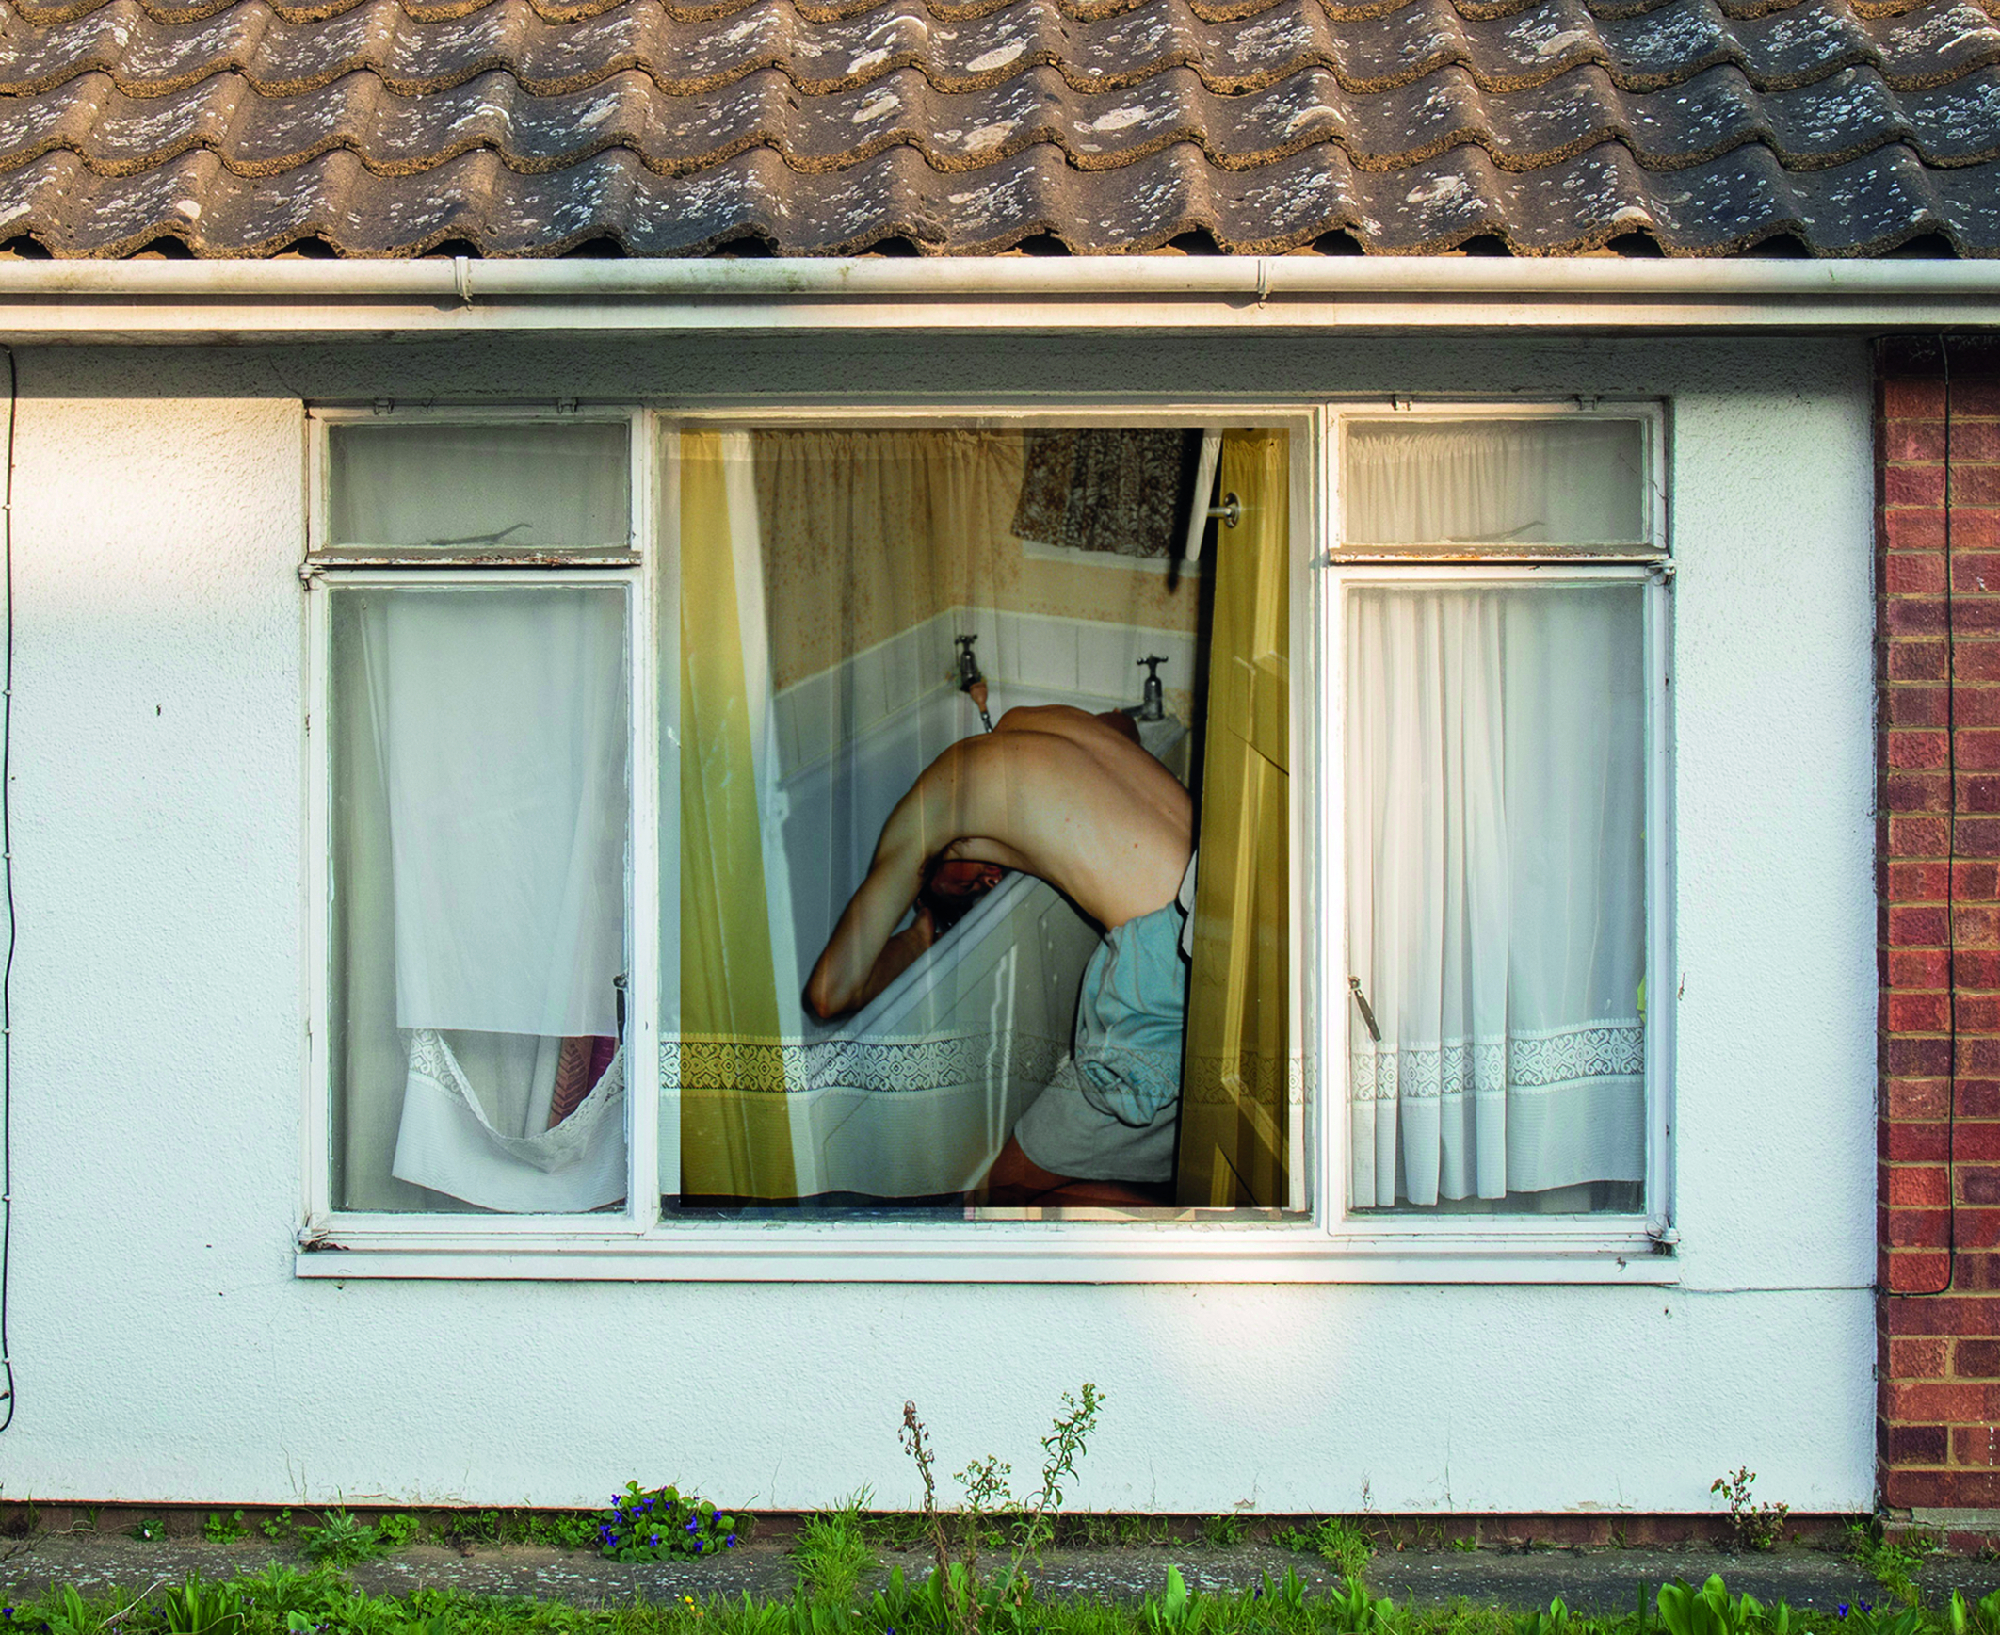 Photo of man washing hair in bath taken through window of house